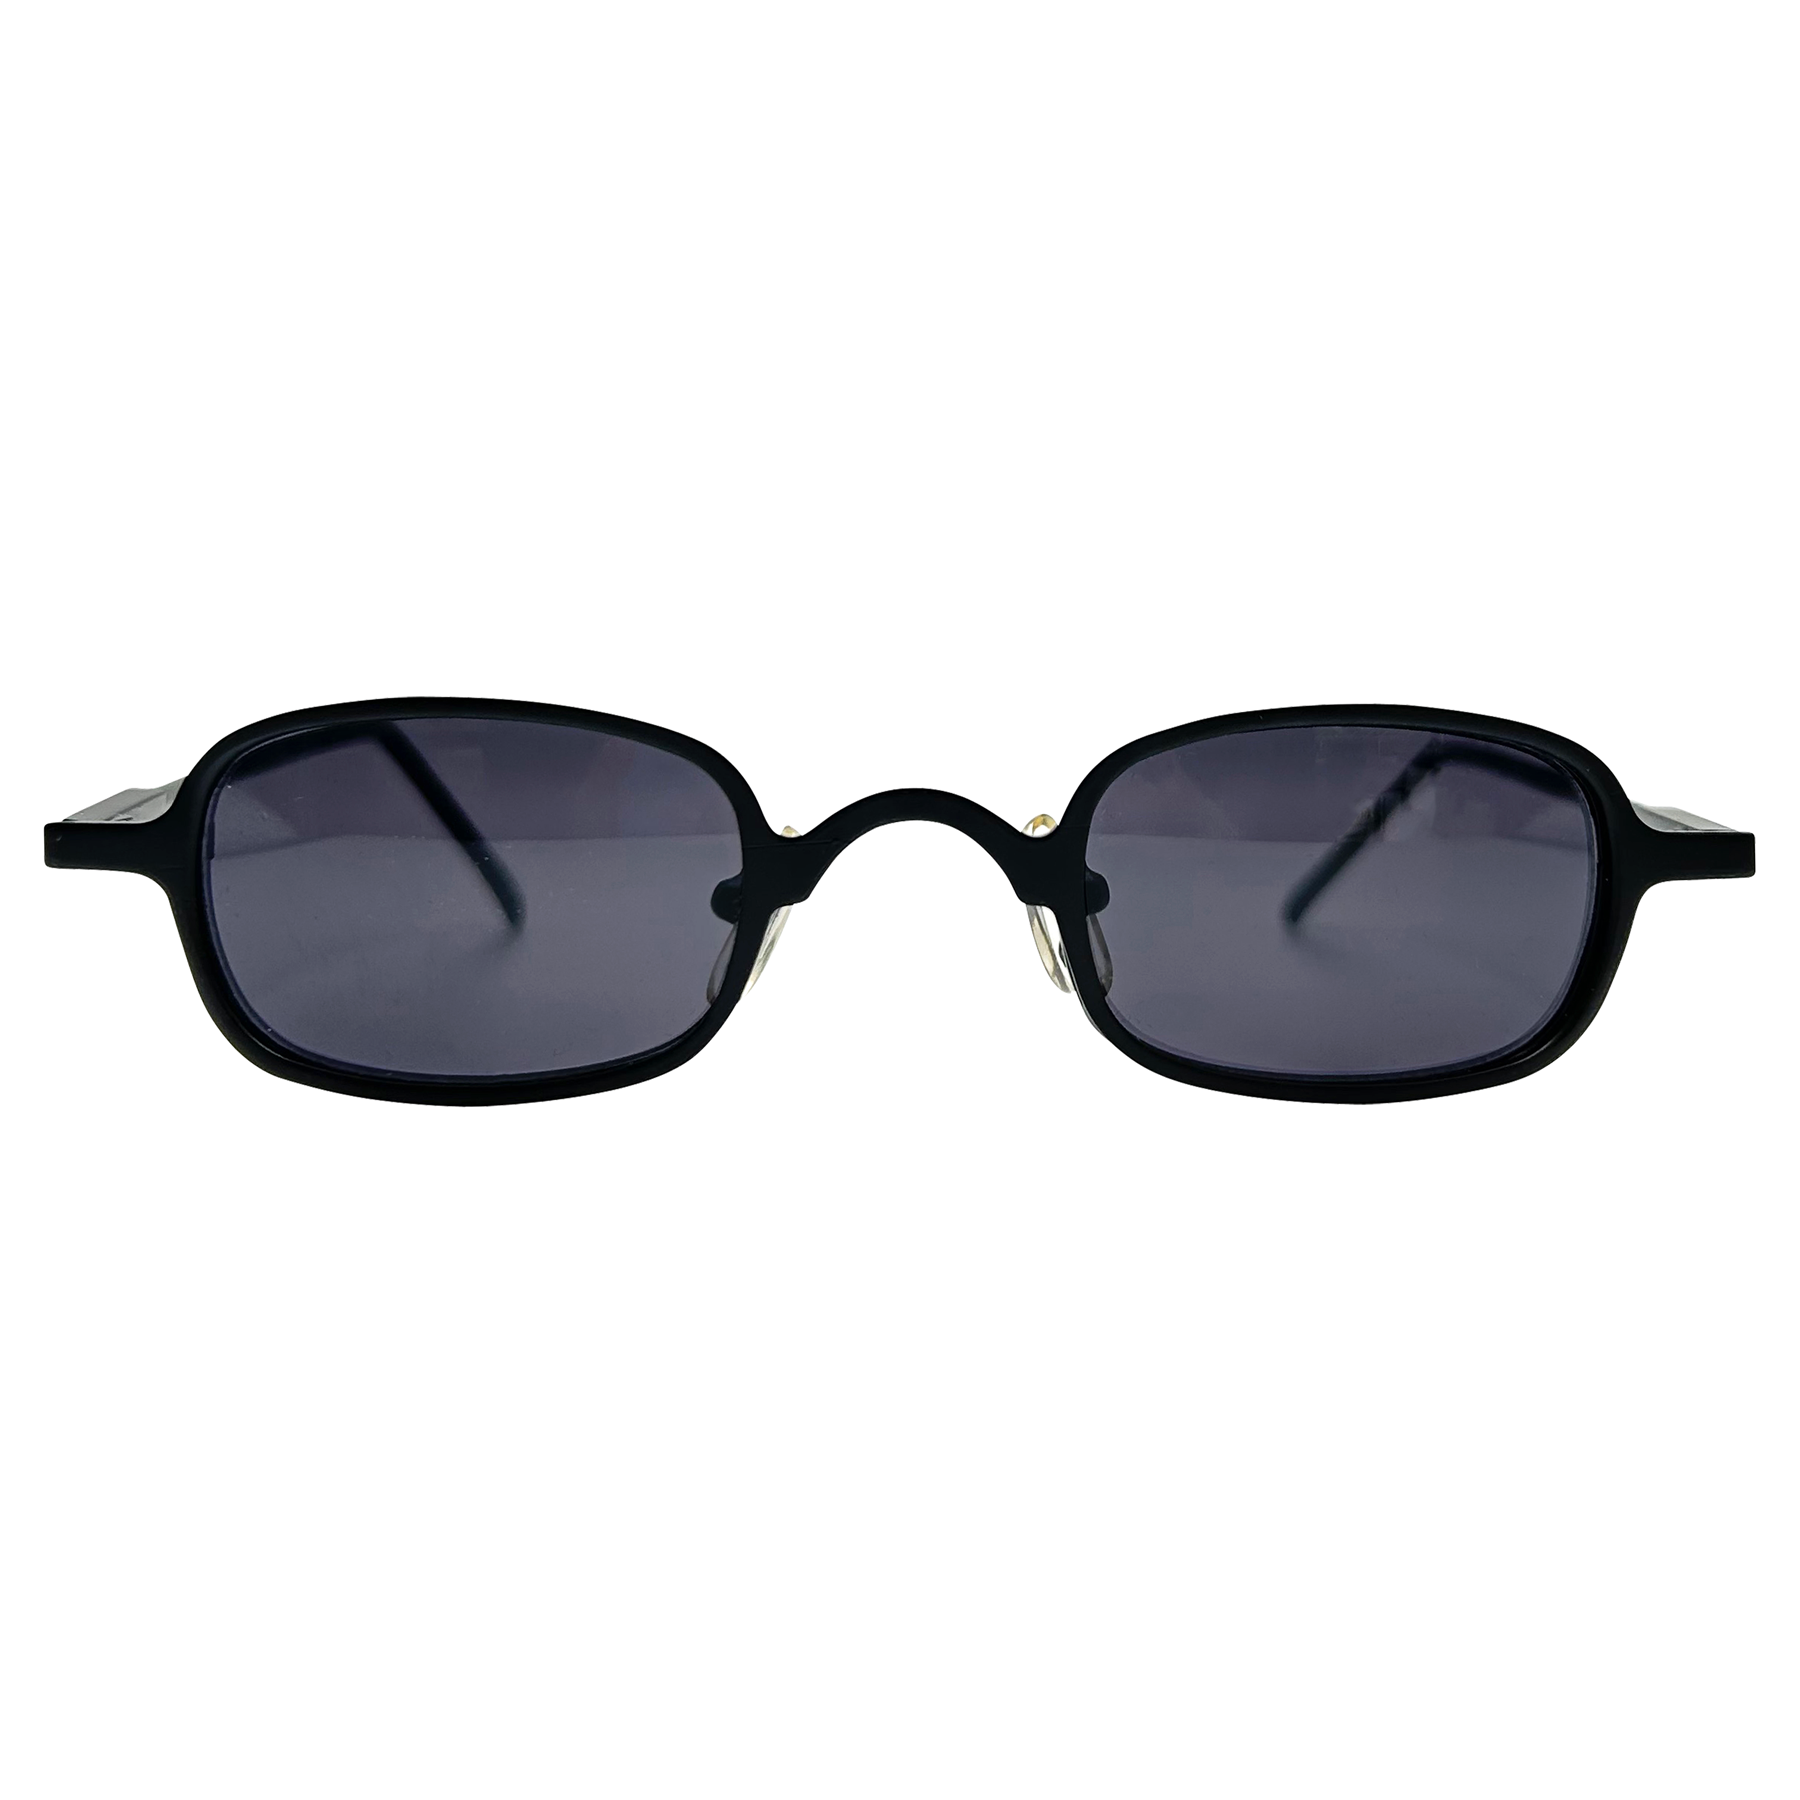 ARROYO Black Square 90s Sunglasses